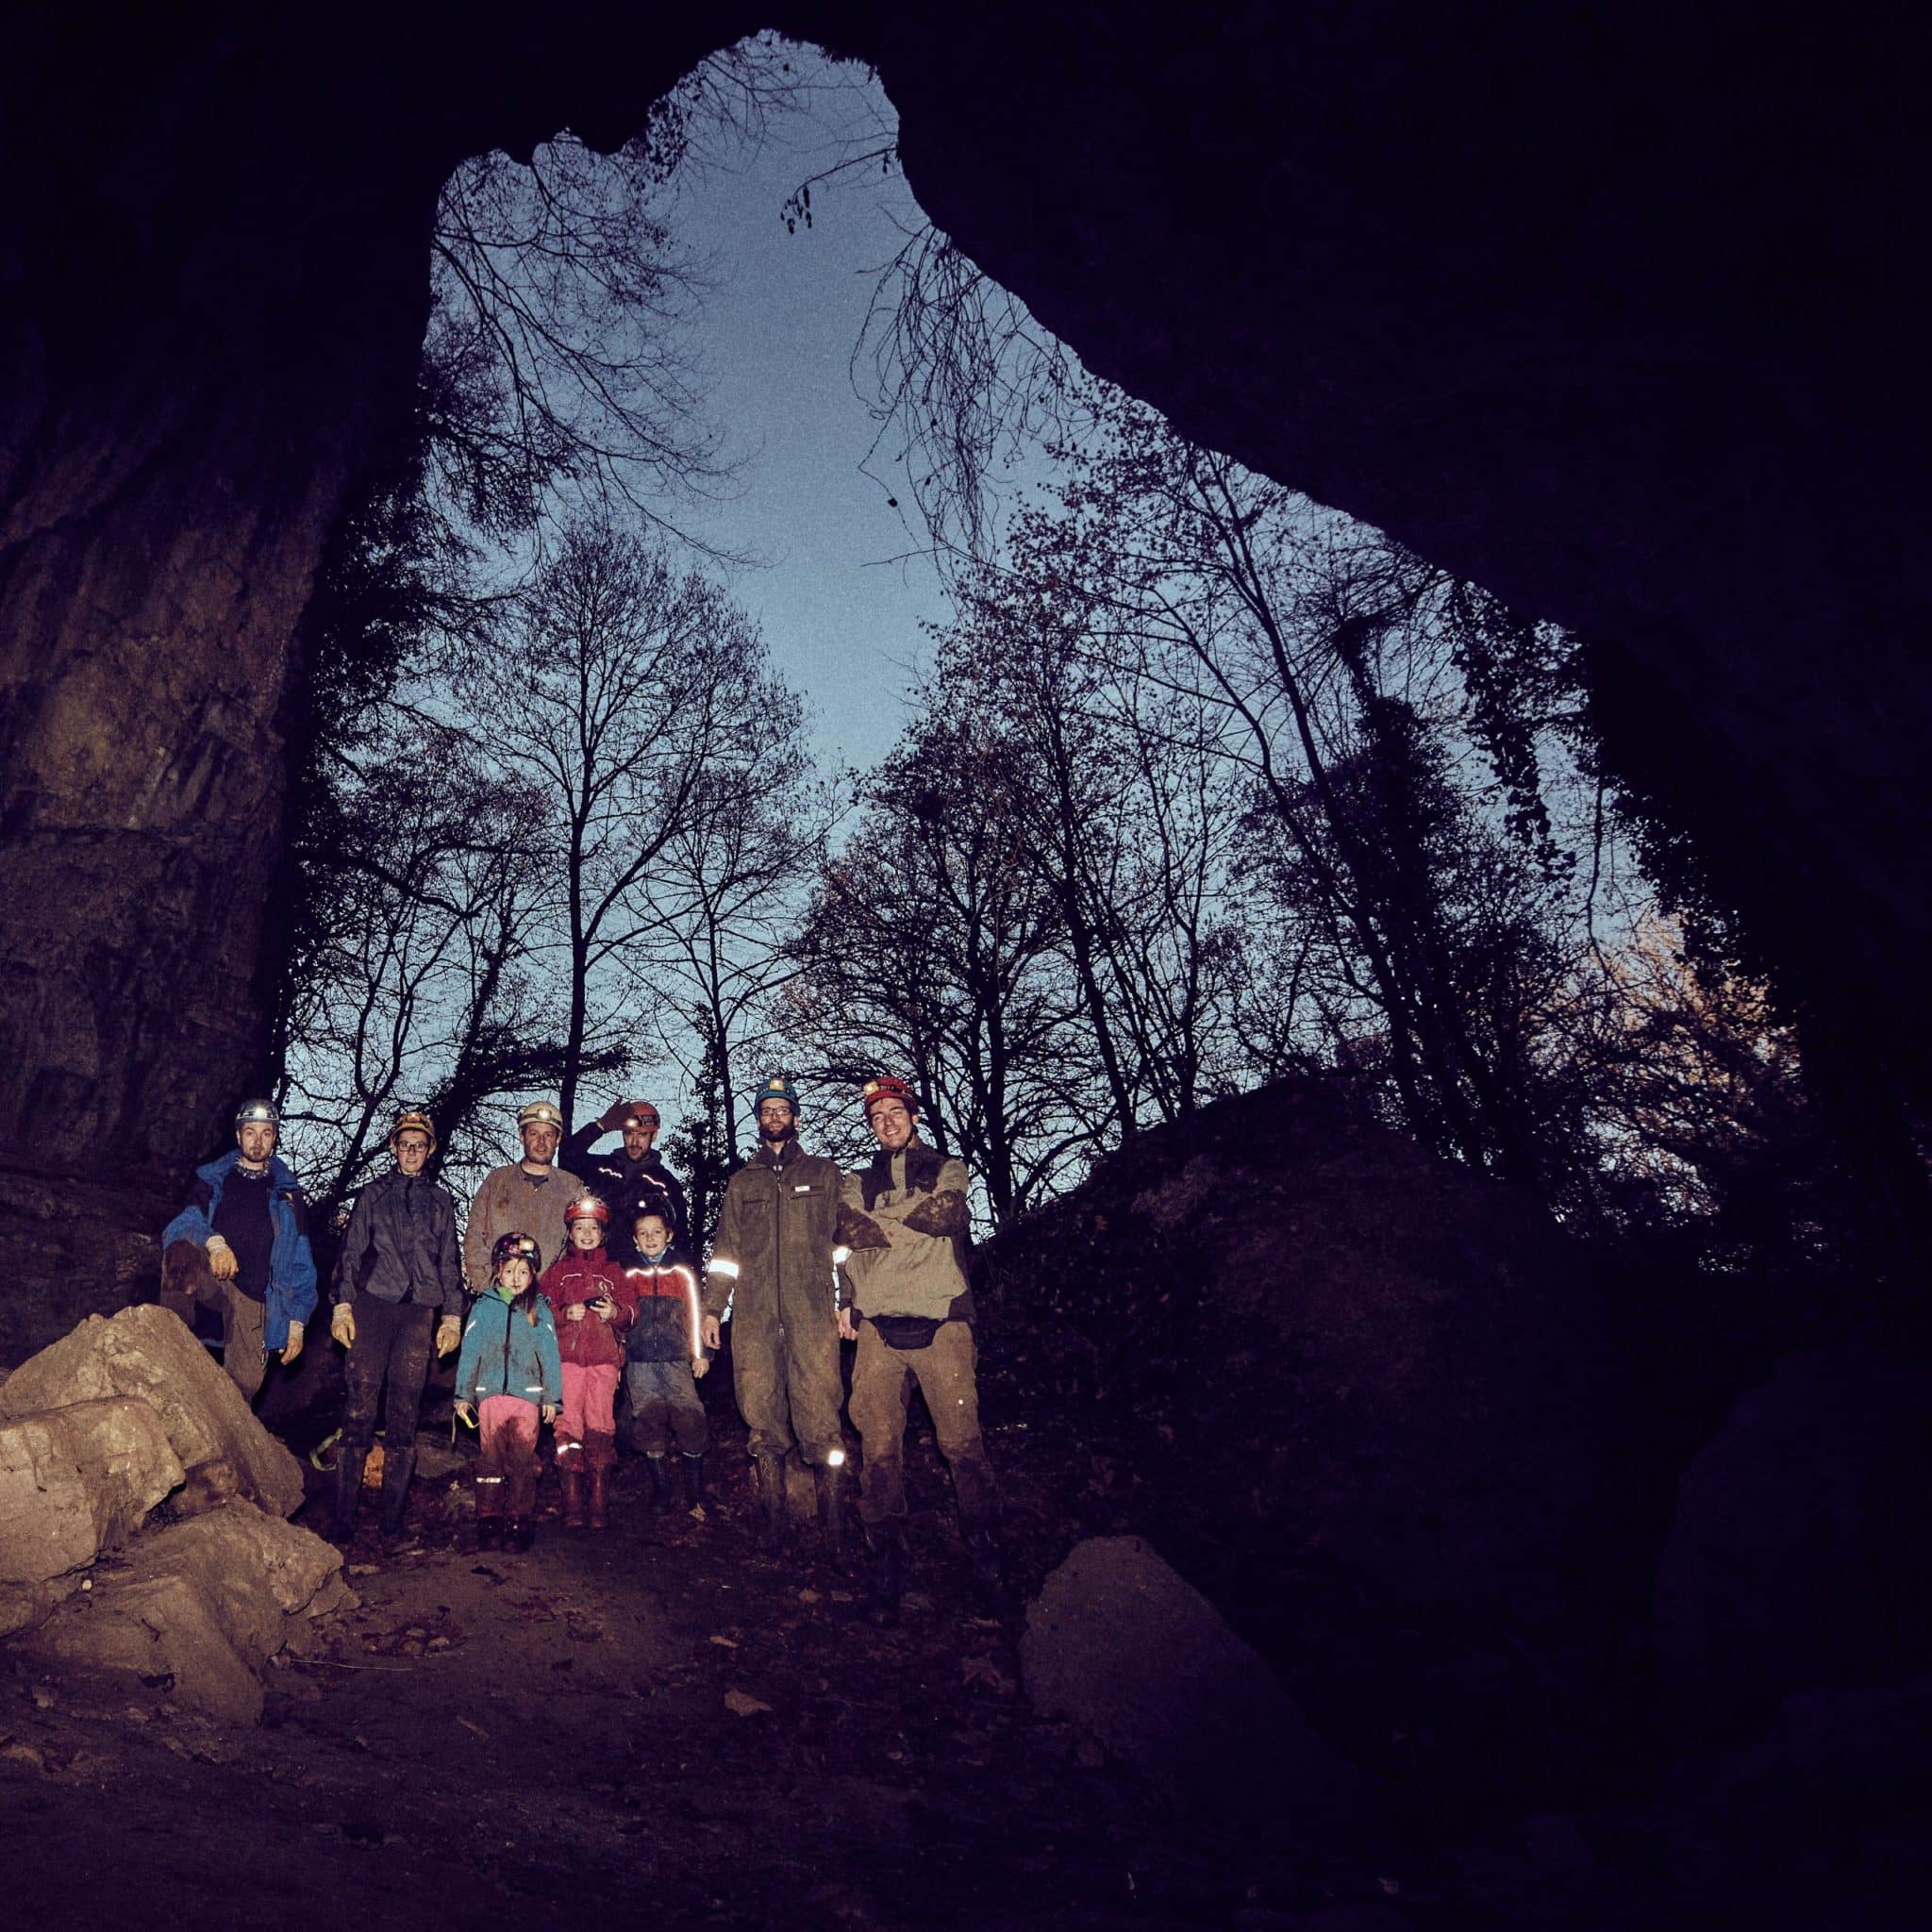 Tourteilnehmer nach der Höhlentour mit verschmutzten Klamotten vor dem Höhleneingang